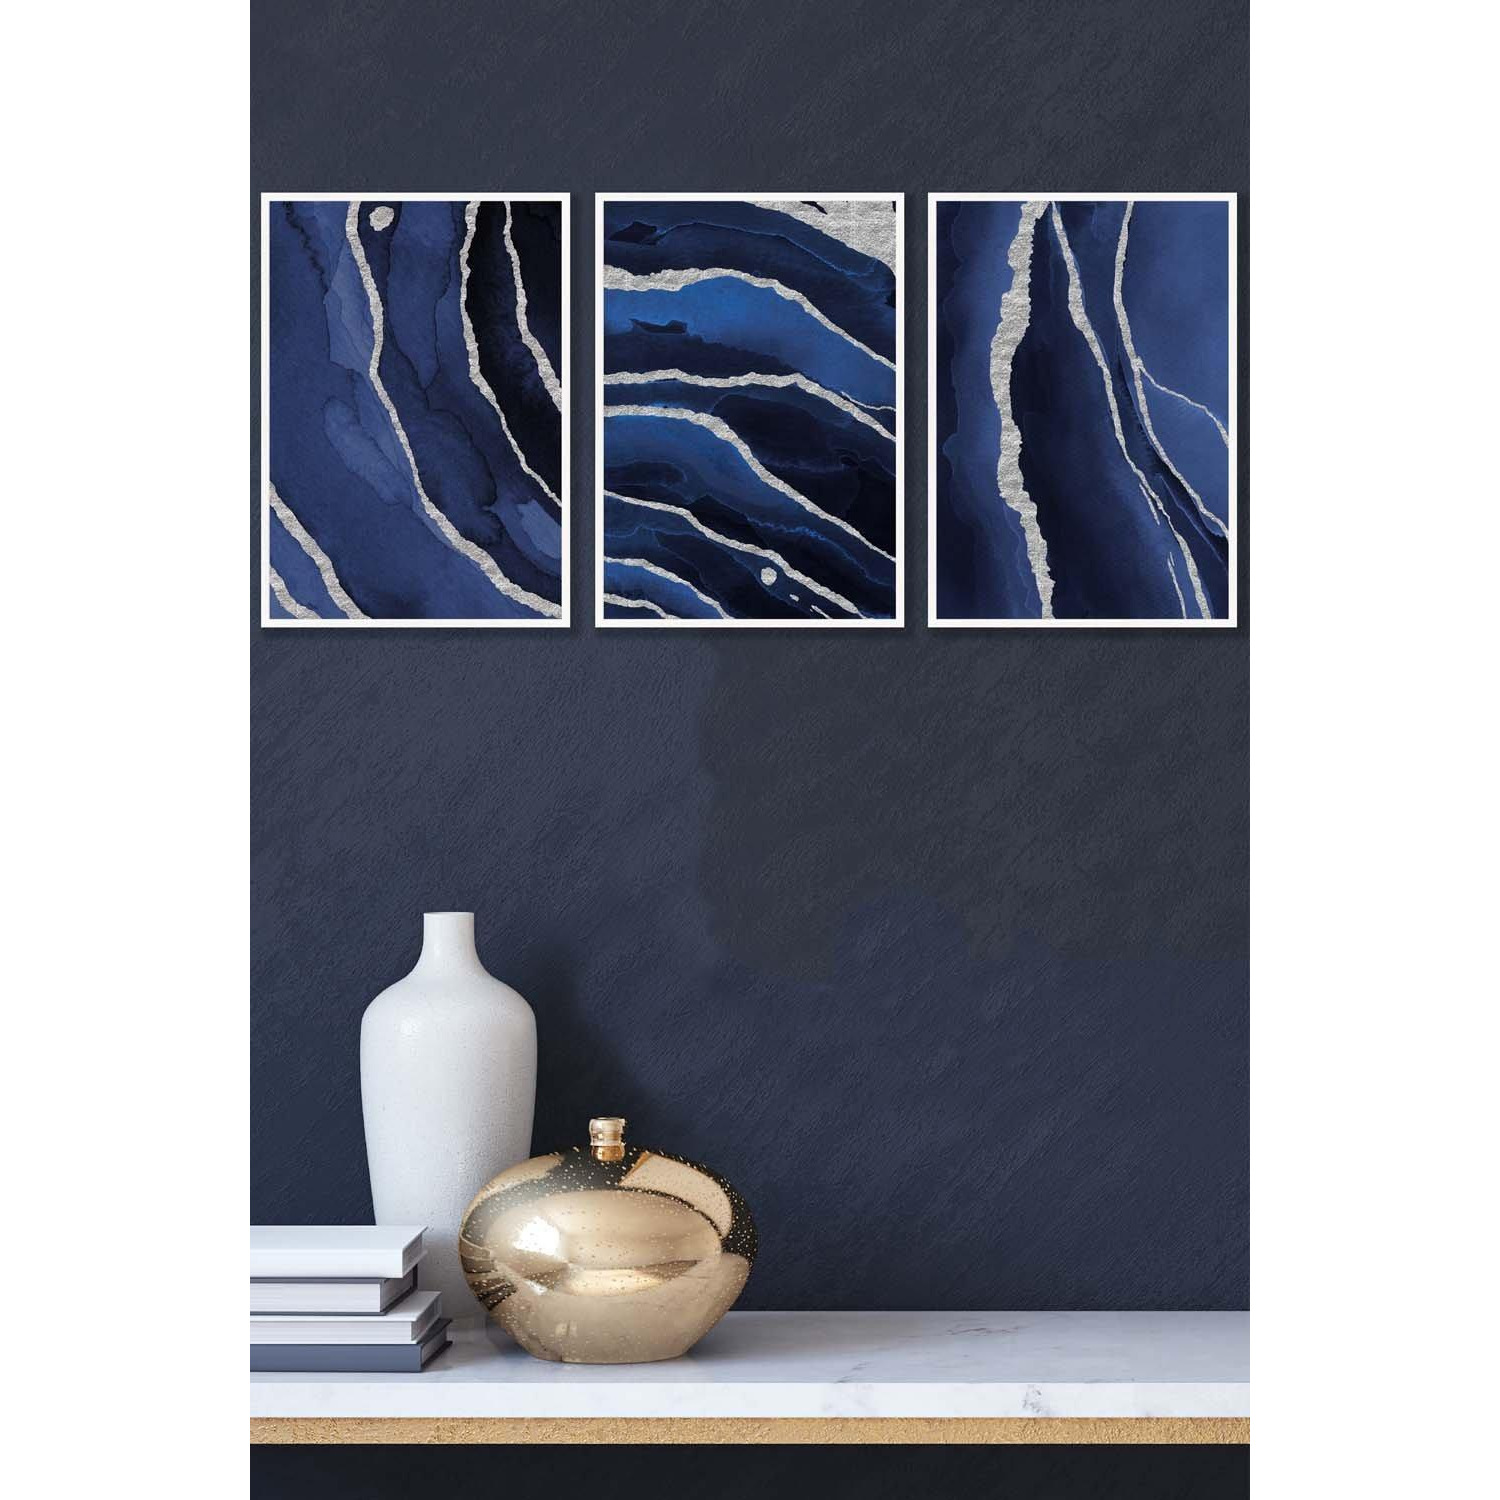 Abstract Navy Blue Silver Strokes Framed Wall Art - Medium - image 1